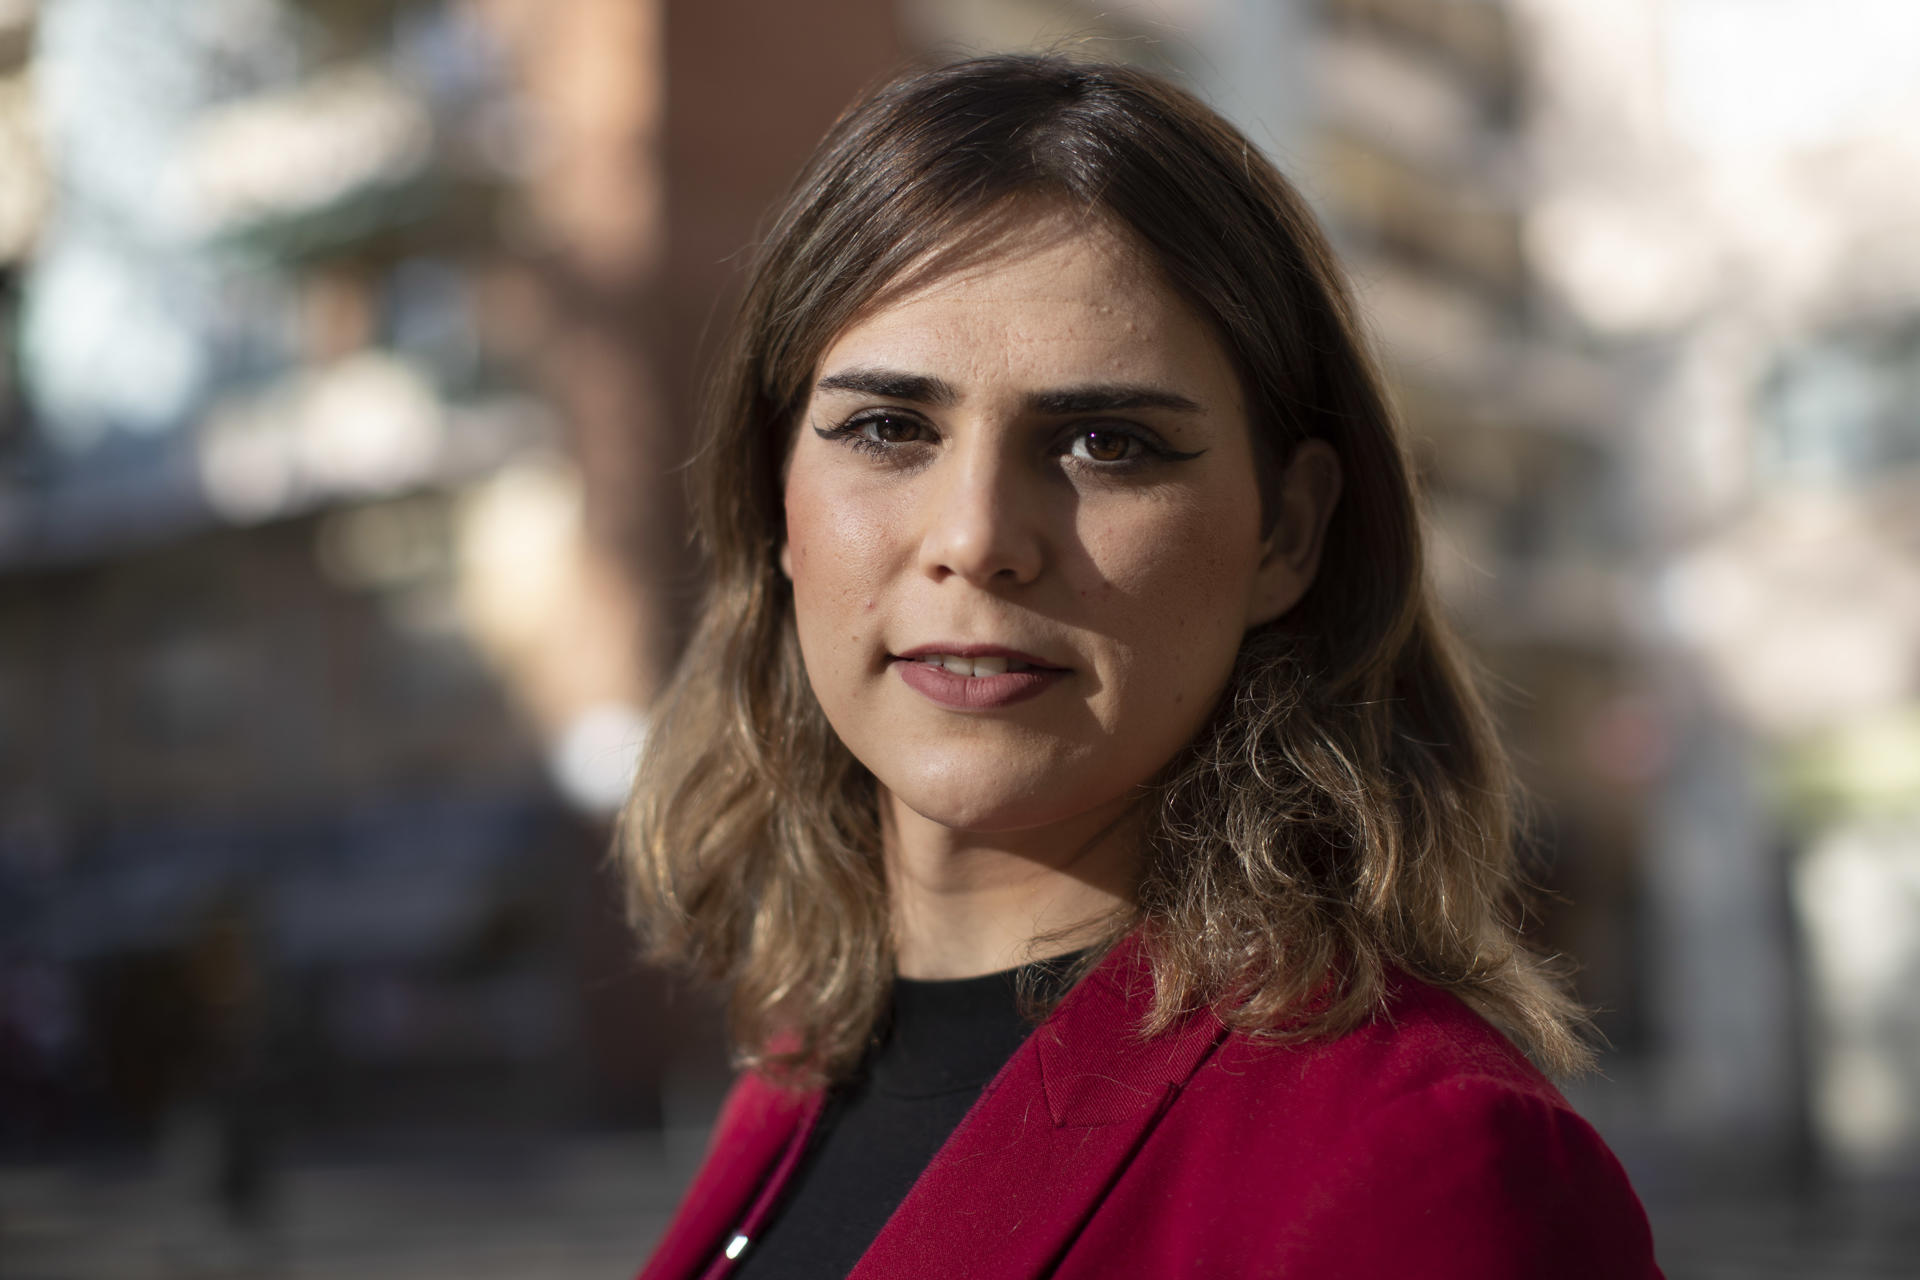 Nessa Molina (Lleida, 1997) recuerda que hacia los siete años fue consciente por primera vez que algo "no encajaba" y diez años después y con apoyo de su familia decidió ir a un psicólogo y "trabajar su identidad".